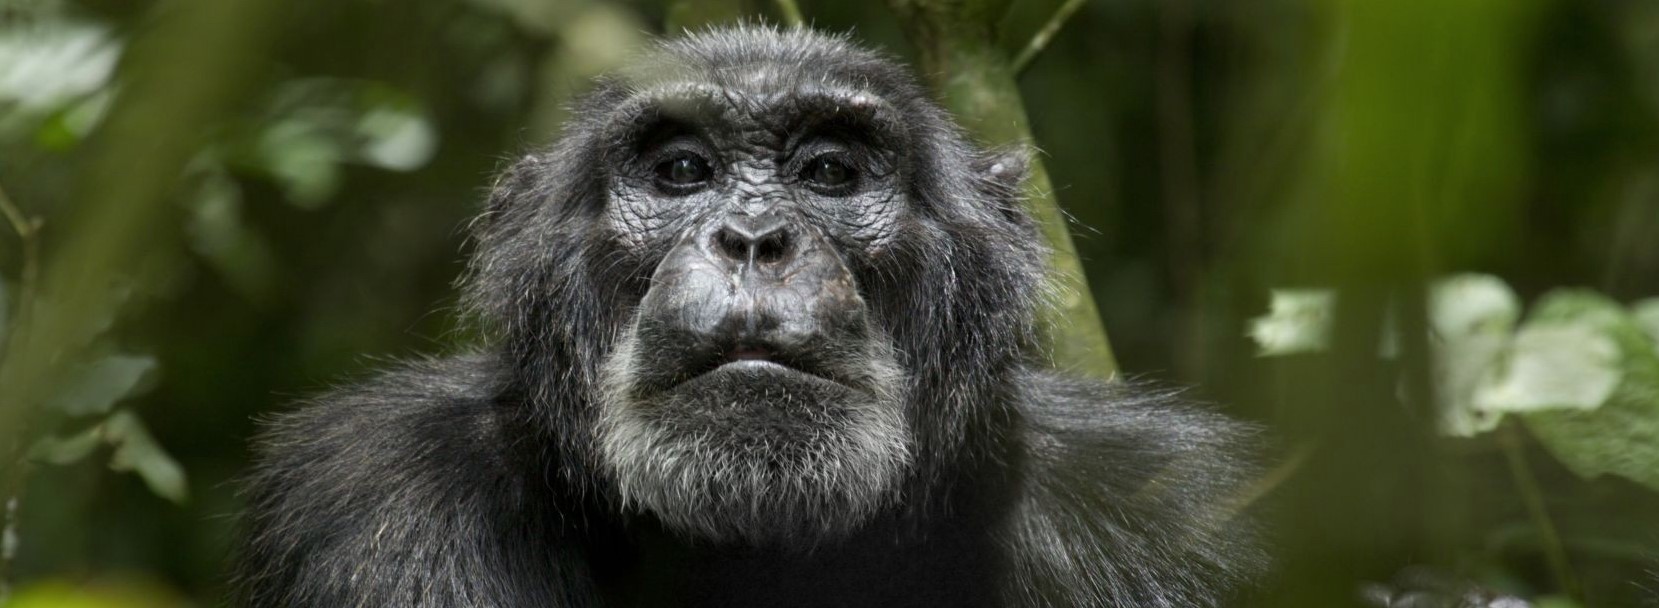 Tag: chimpanzees